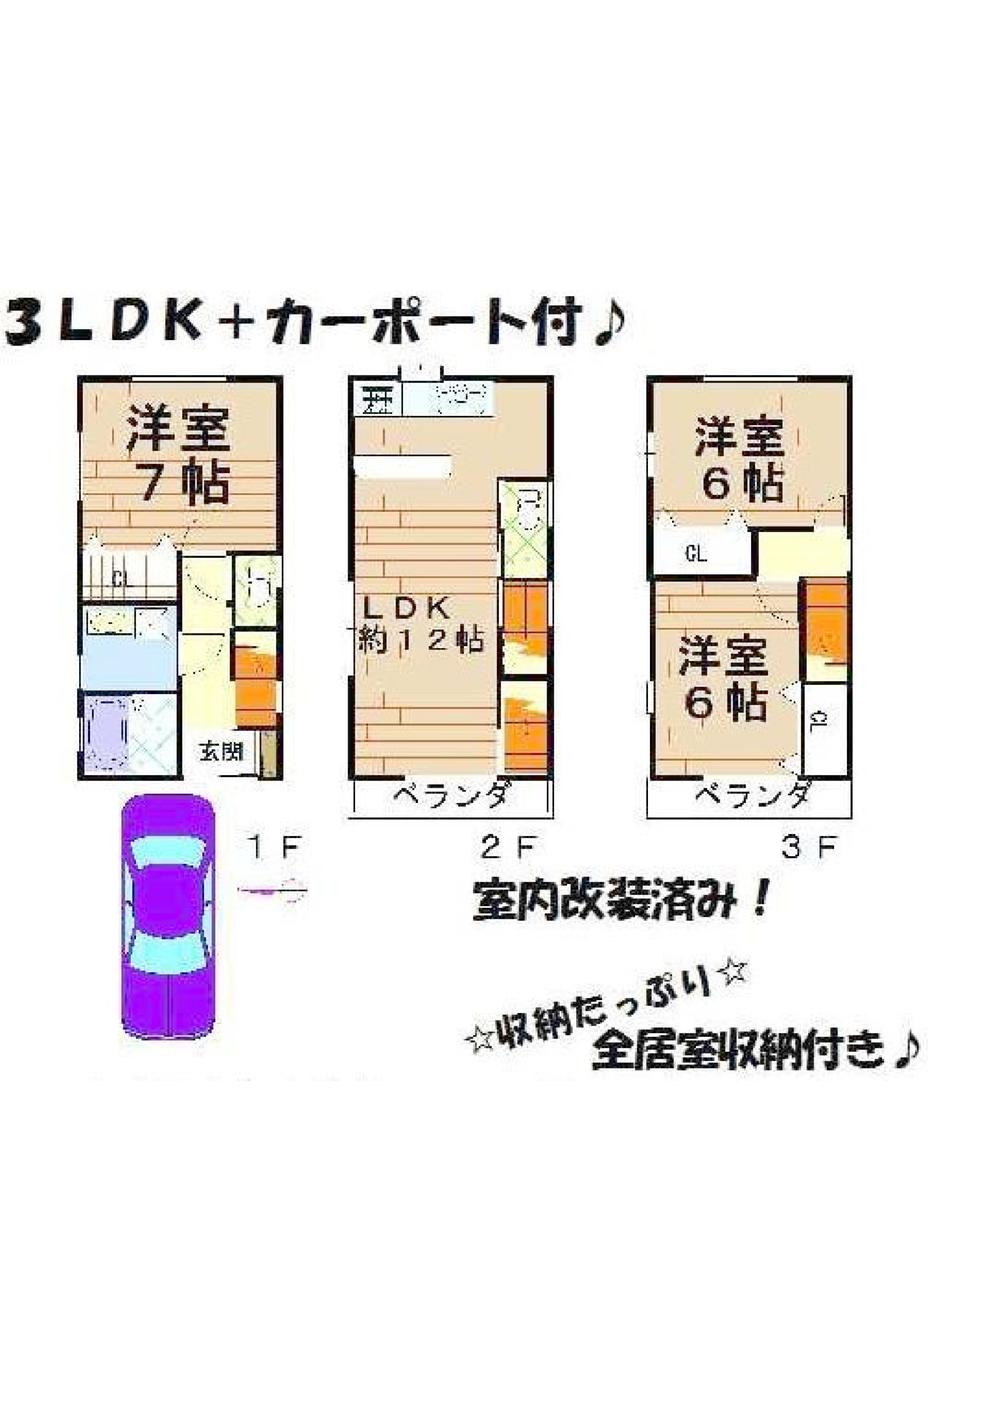 Floor plan. 15.9 million yen, 3LDK, Land area 57.25 sq m , Building area 79.47 sq m